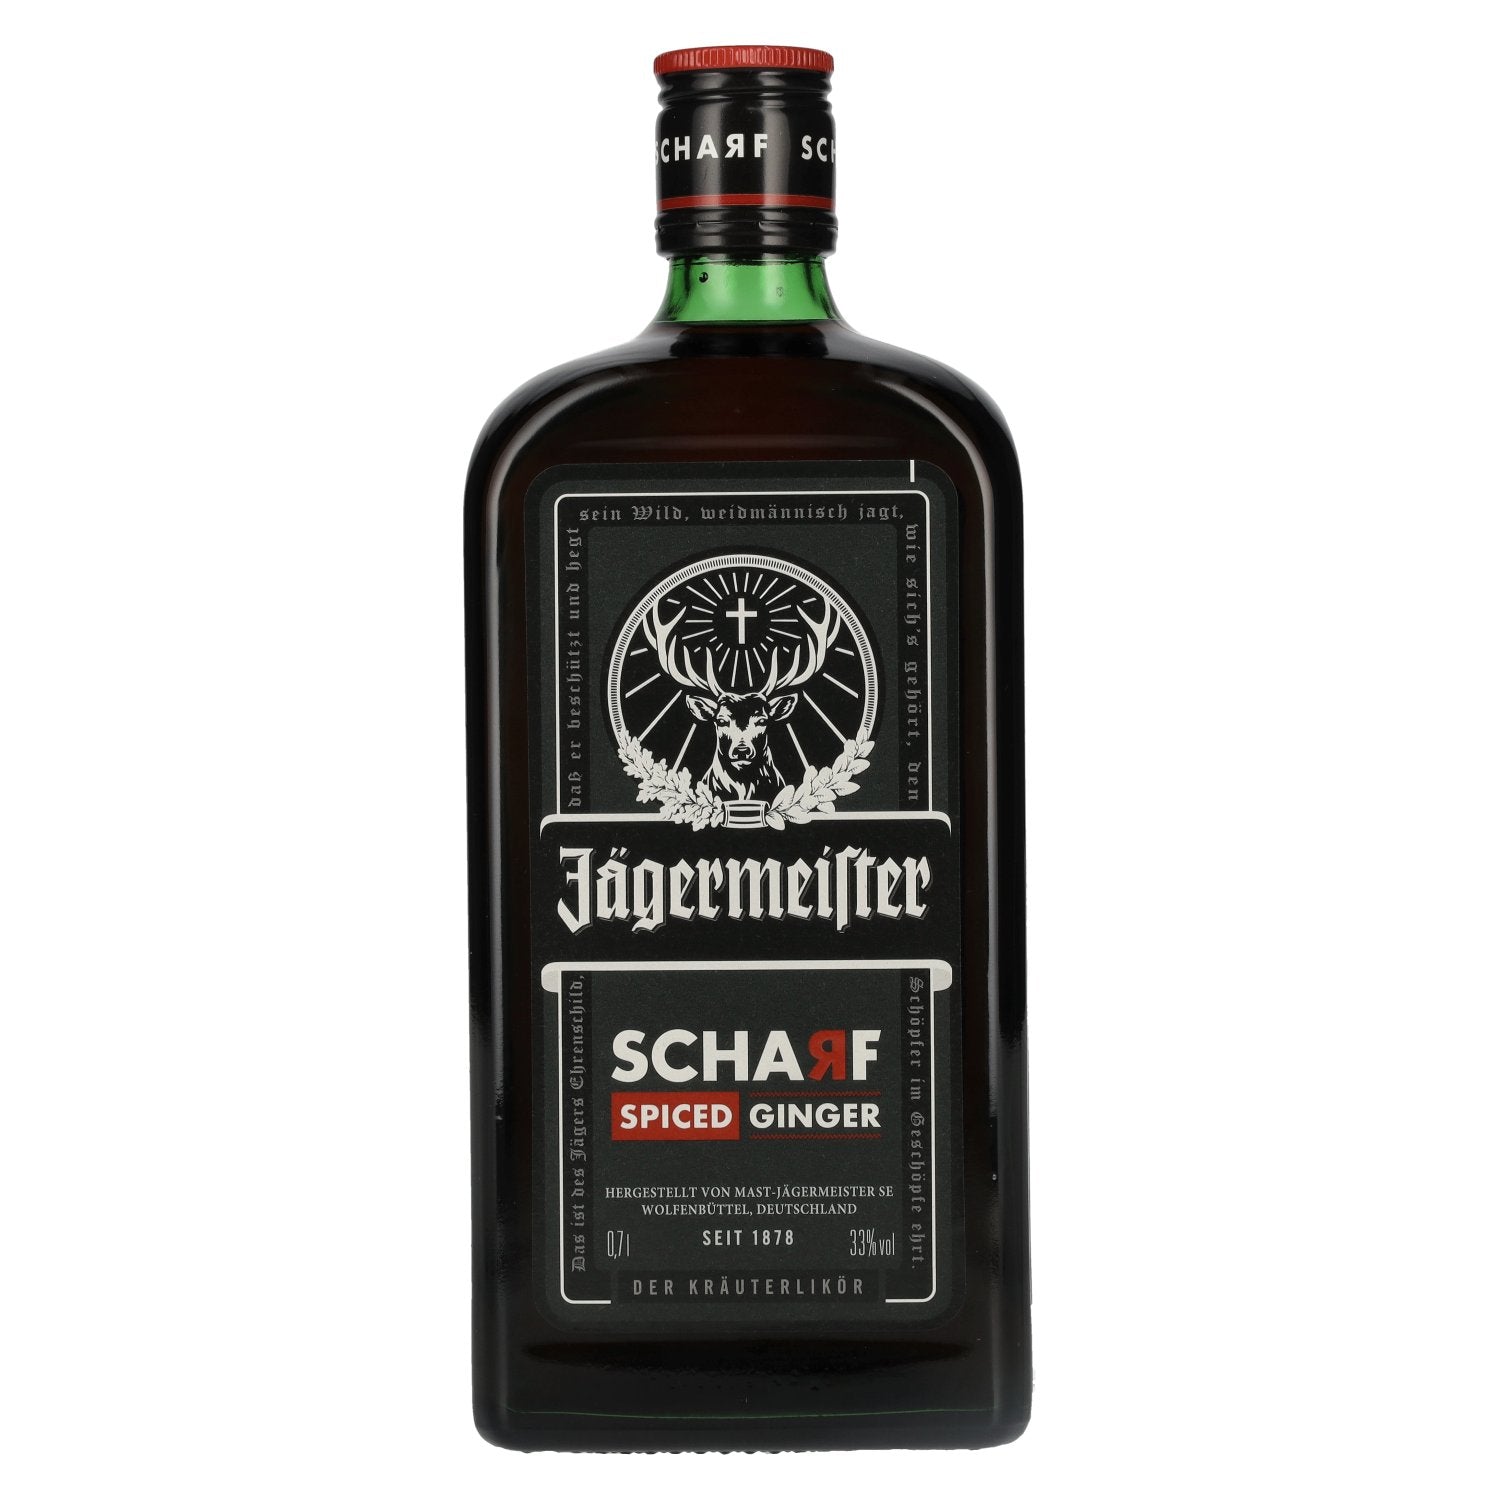 Jaegermeister SCHARF SPICED Ginger Kraeuterlikoer 33% Vol. 0,7l